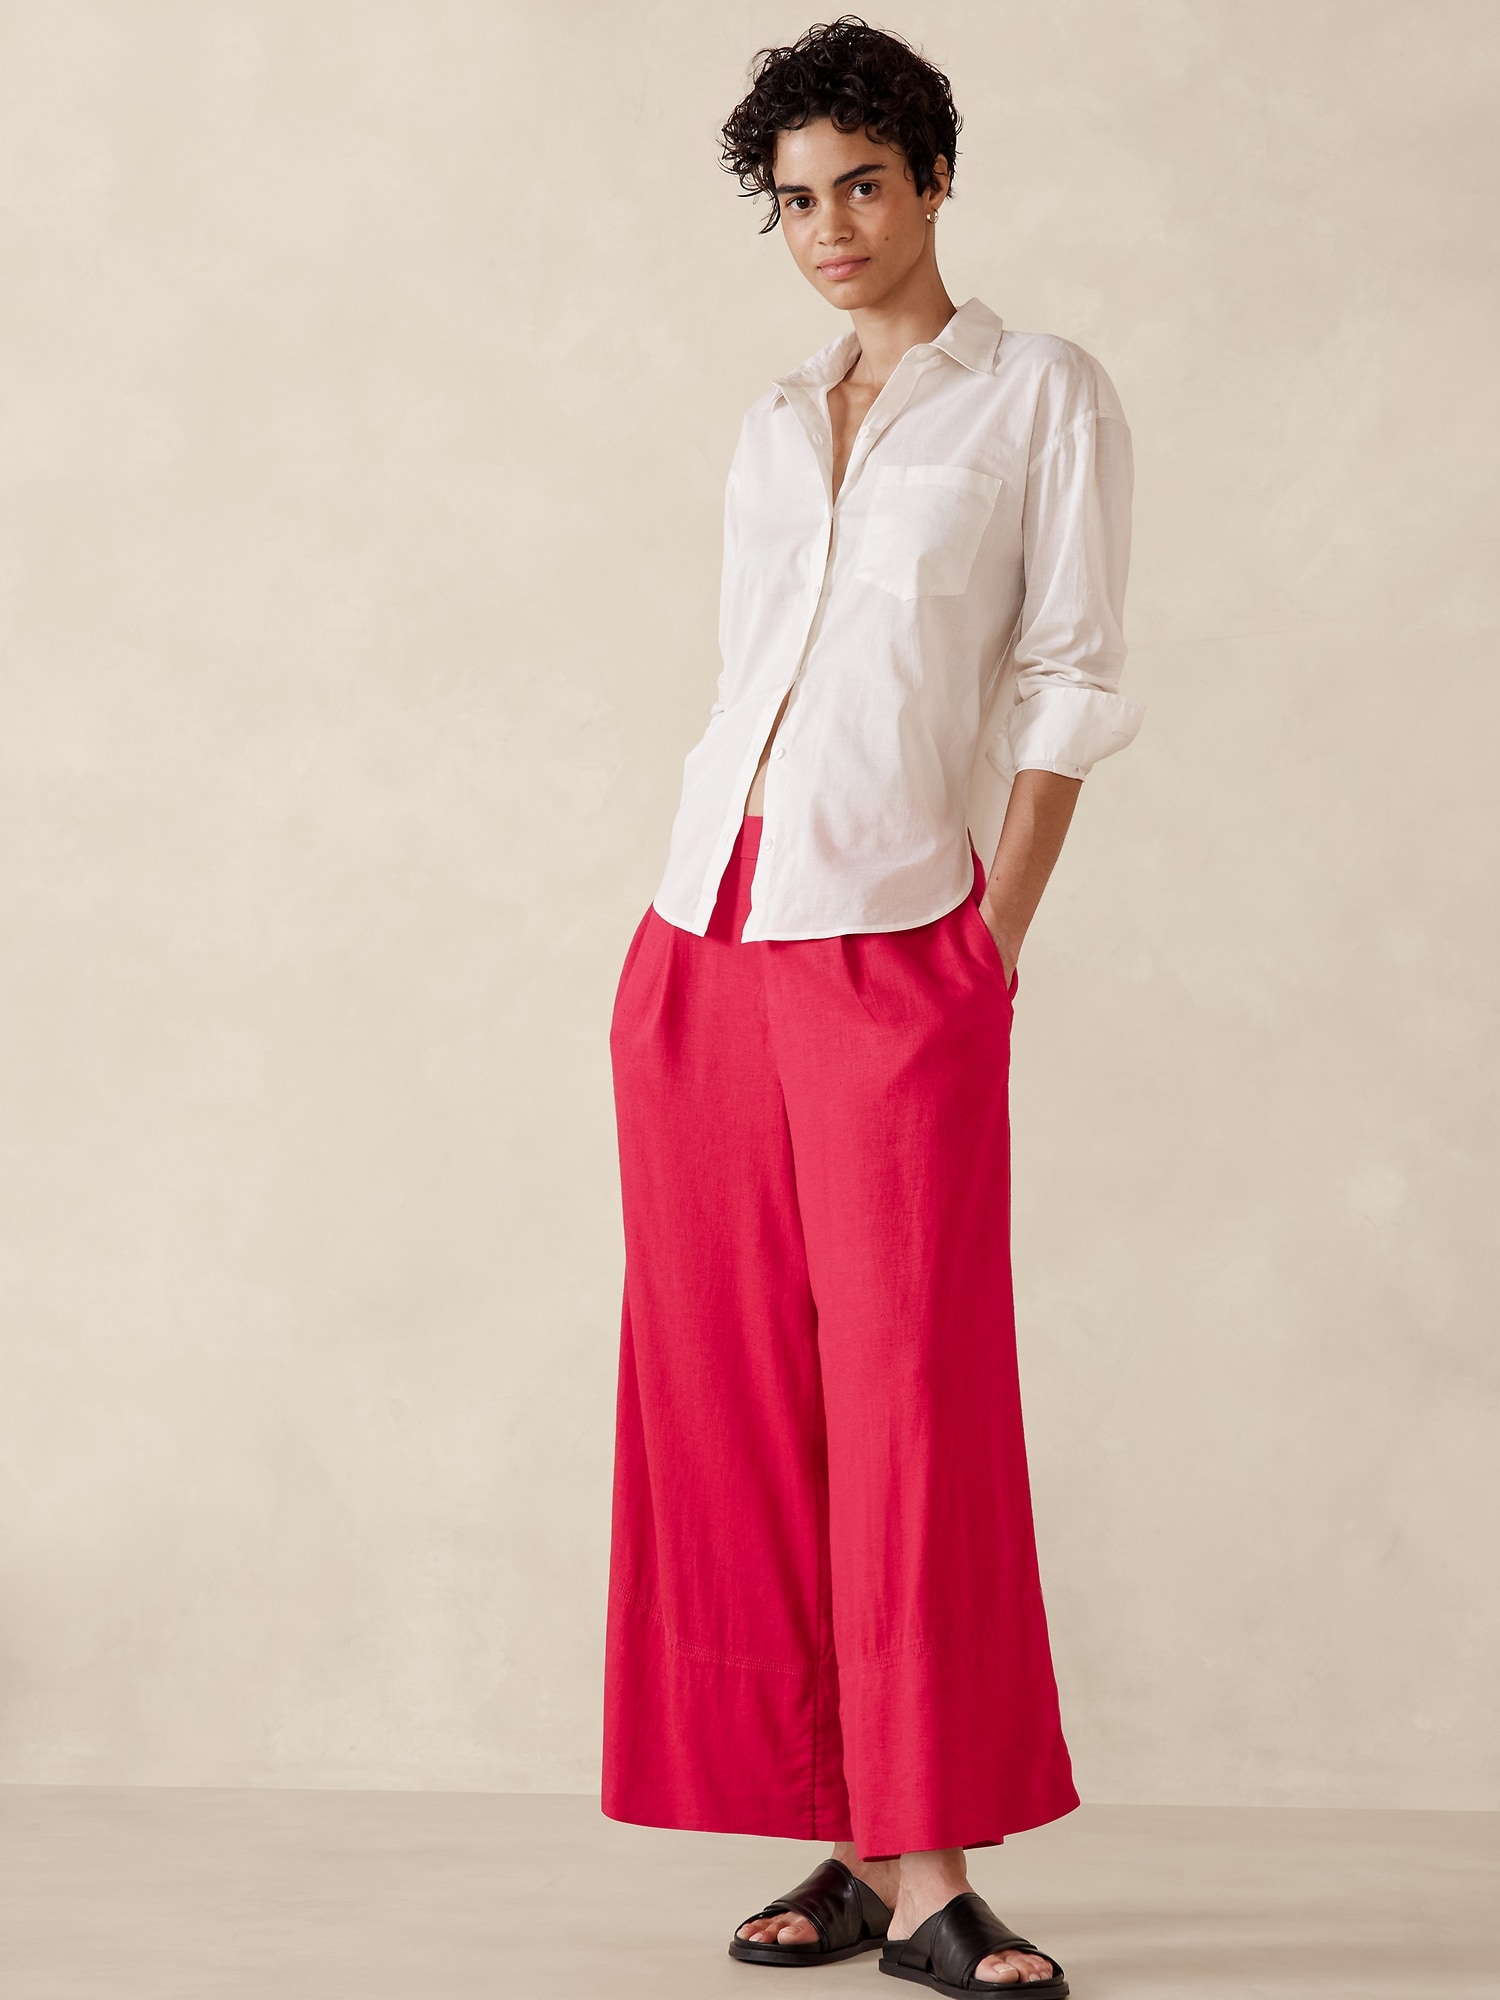 Women's Summer Linen Capris  Pants for women, Fashion pants, Womens pants  design